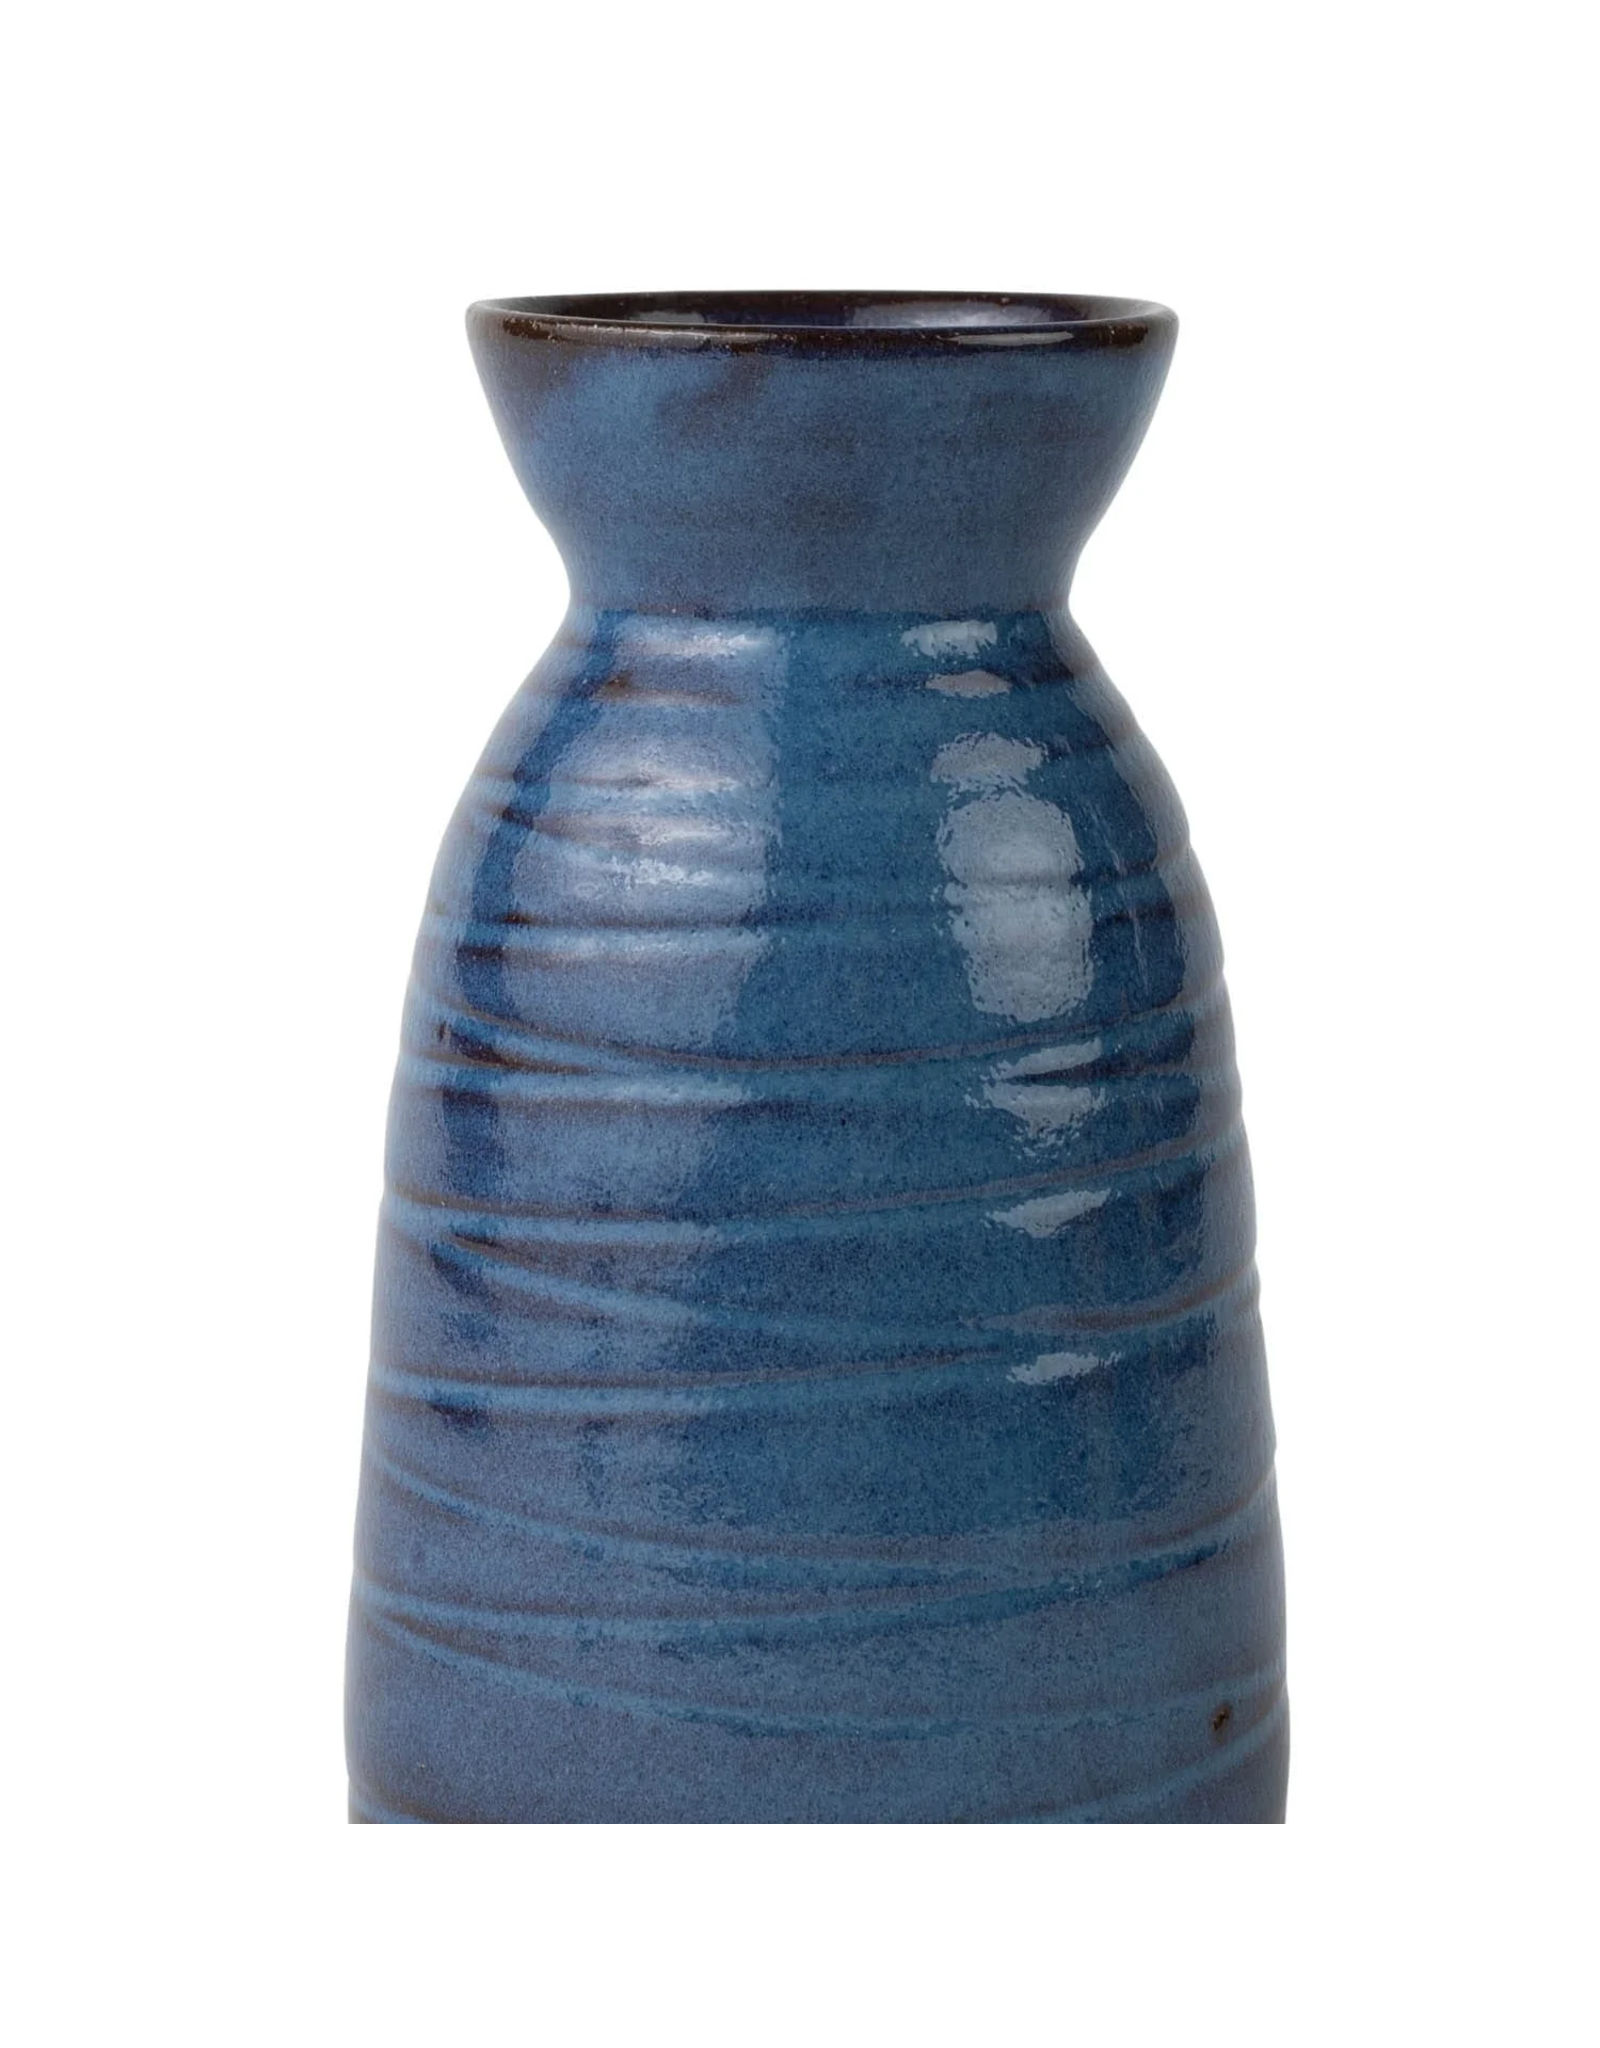 Trade roots Ceramic Sake Carafe, Nepal